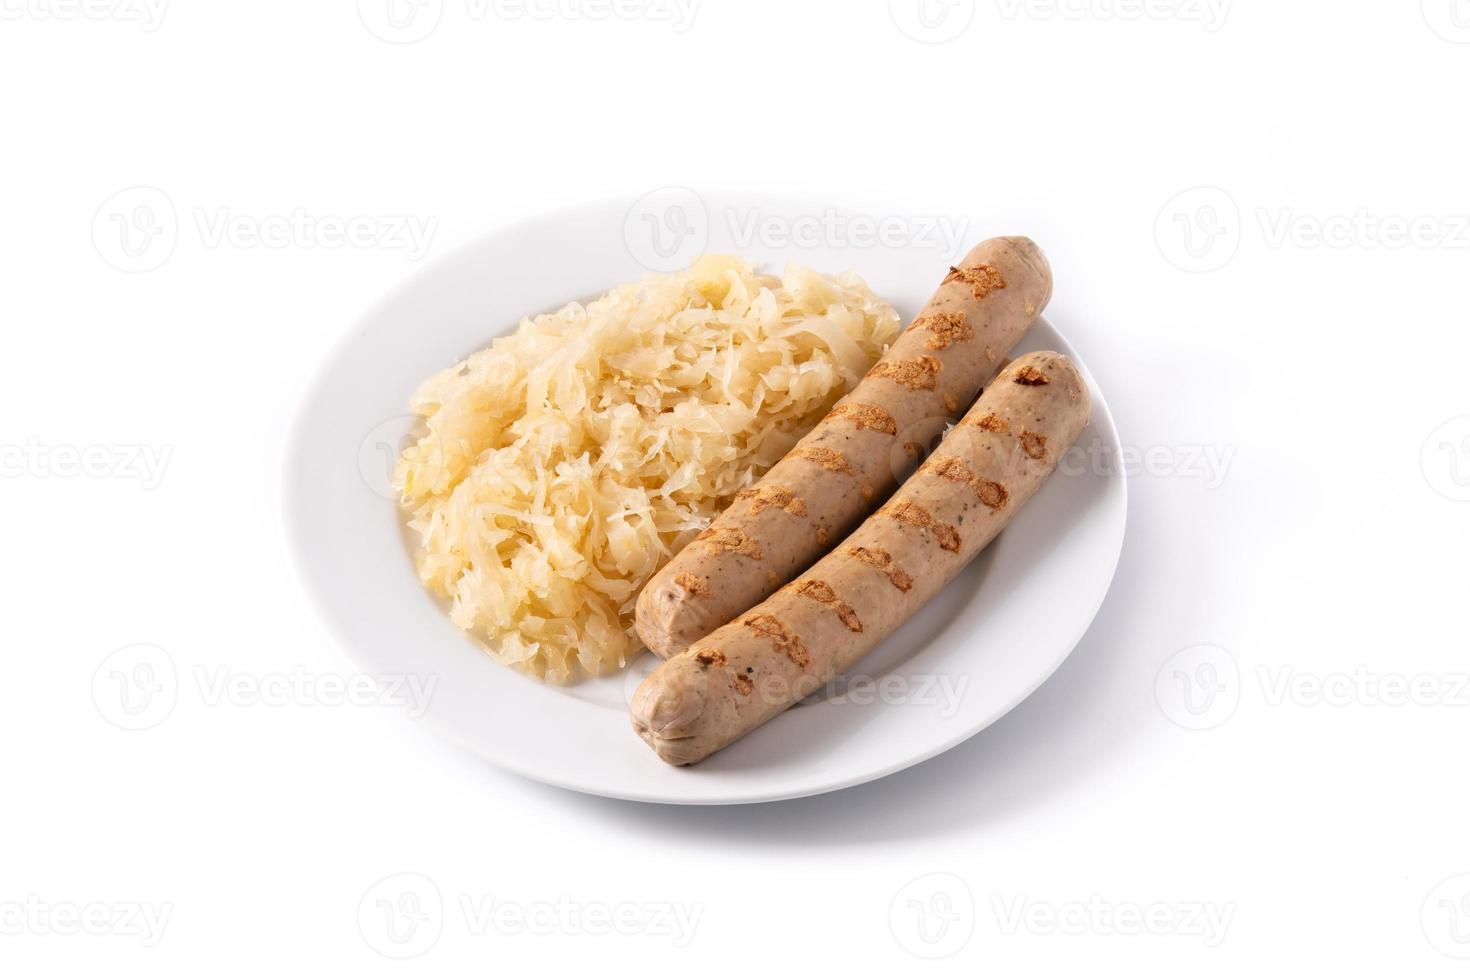 Bratwurst sausage and sauerkraut photo